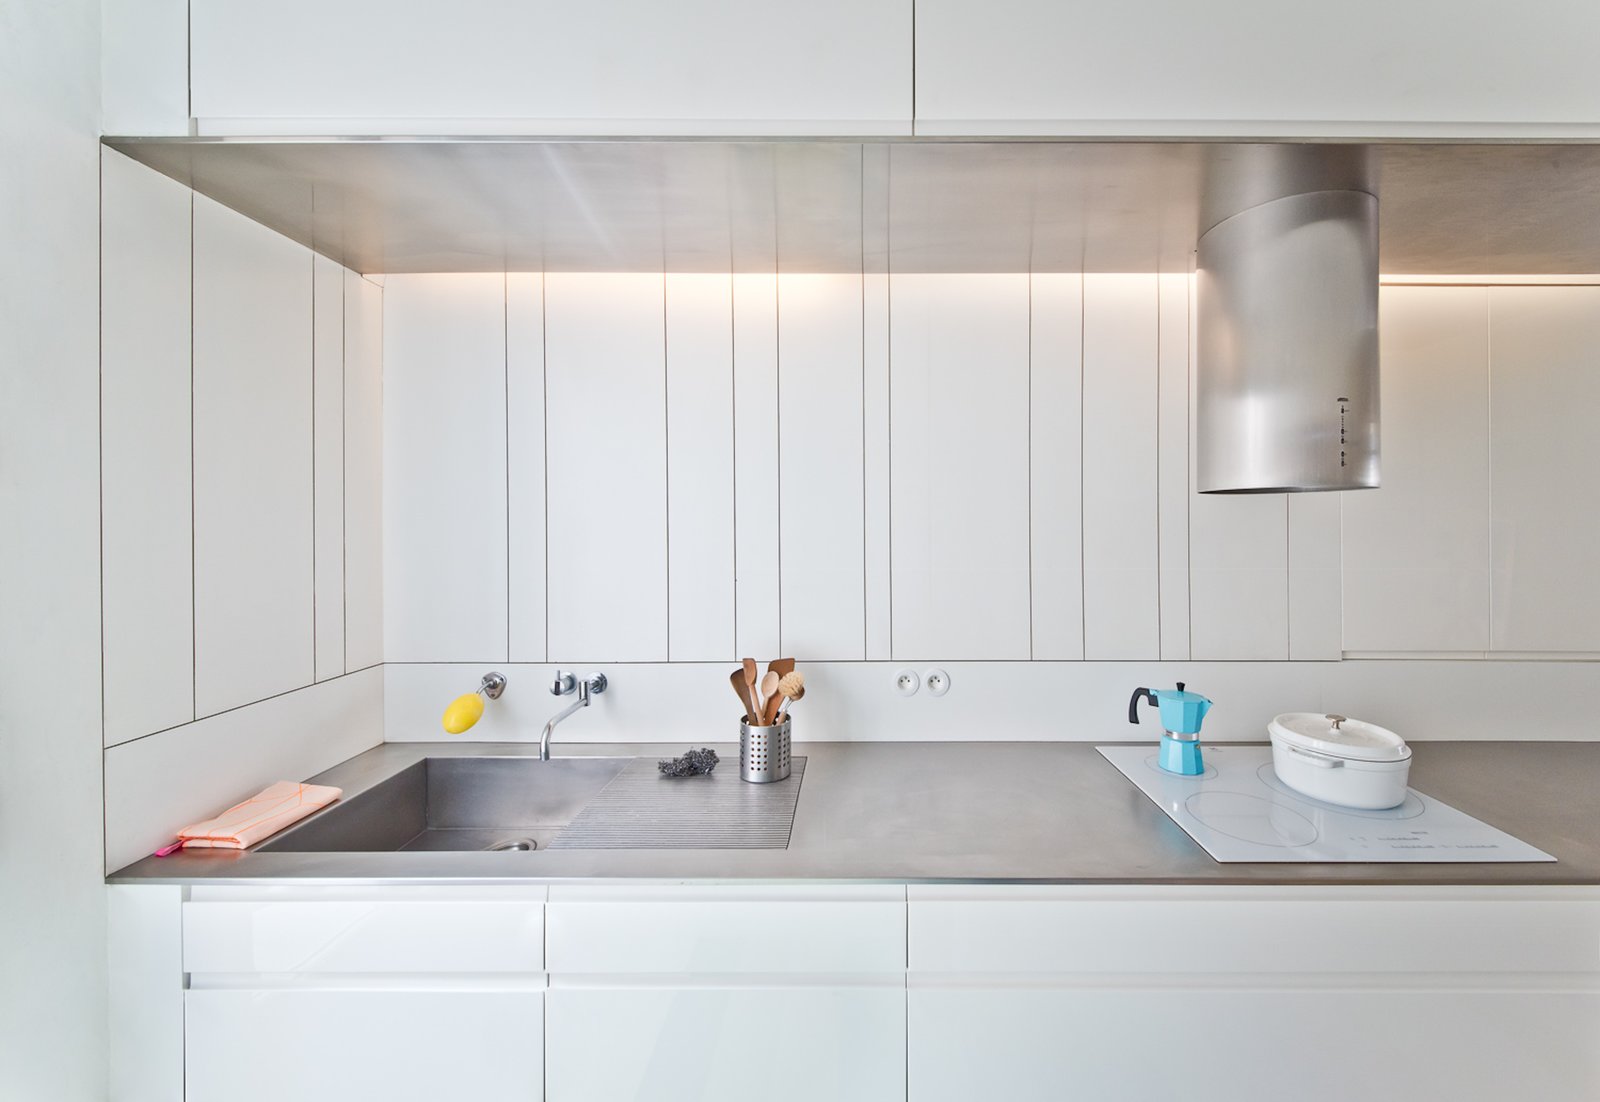 Bếp được thiết kế đơn giản nhưng hiện đại. Trải dài khu vực bếp nấu và bồn rửa là bề mặt bàn làm bằng thép không gỉ sáng bóng, dễ dàng vệ sinh.